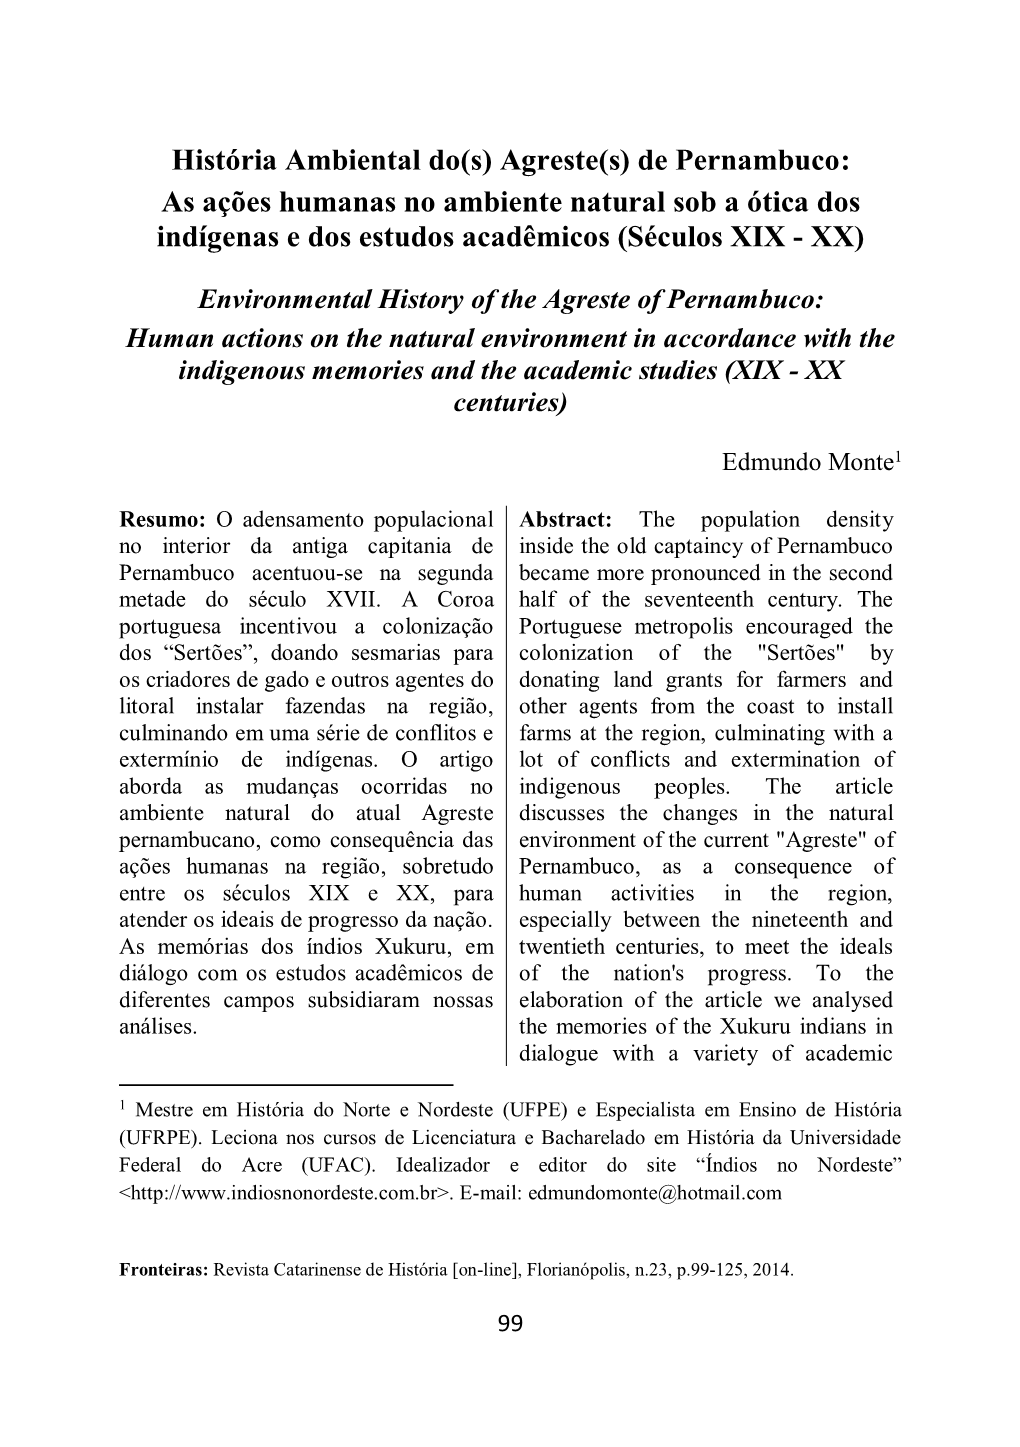 Agreste(S) De Pernambuco: As Ações Humanas No Ambiente Natural Sob a Ótica Dos Indígenas E Dos Estudos Acadêmicos (Séculos XIX - XX)